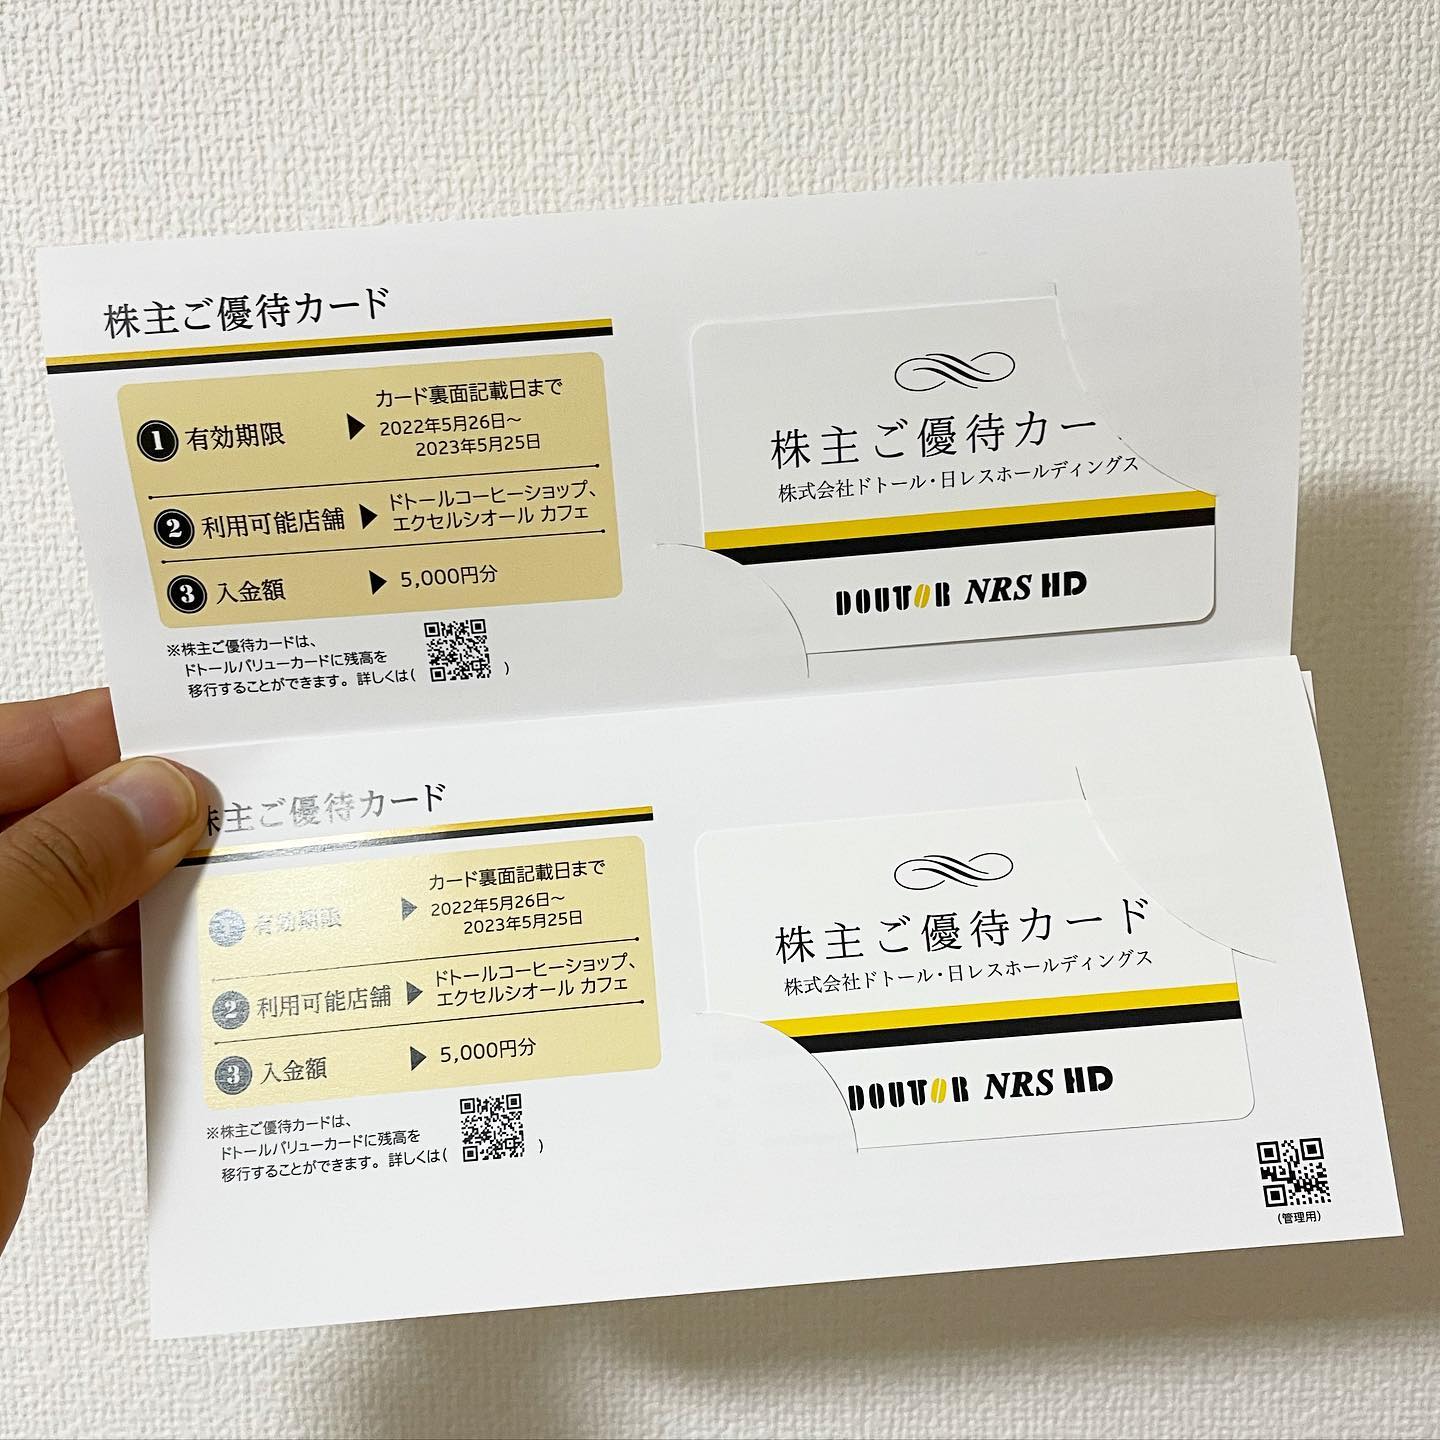 ドトール・日レスホールディングス 株主優待カード 10000円分 www